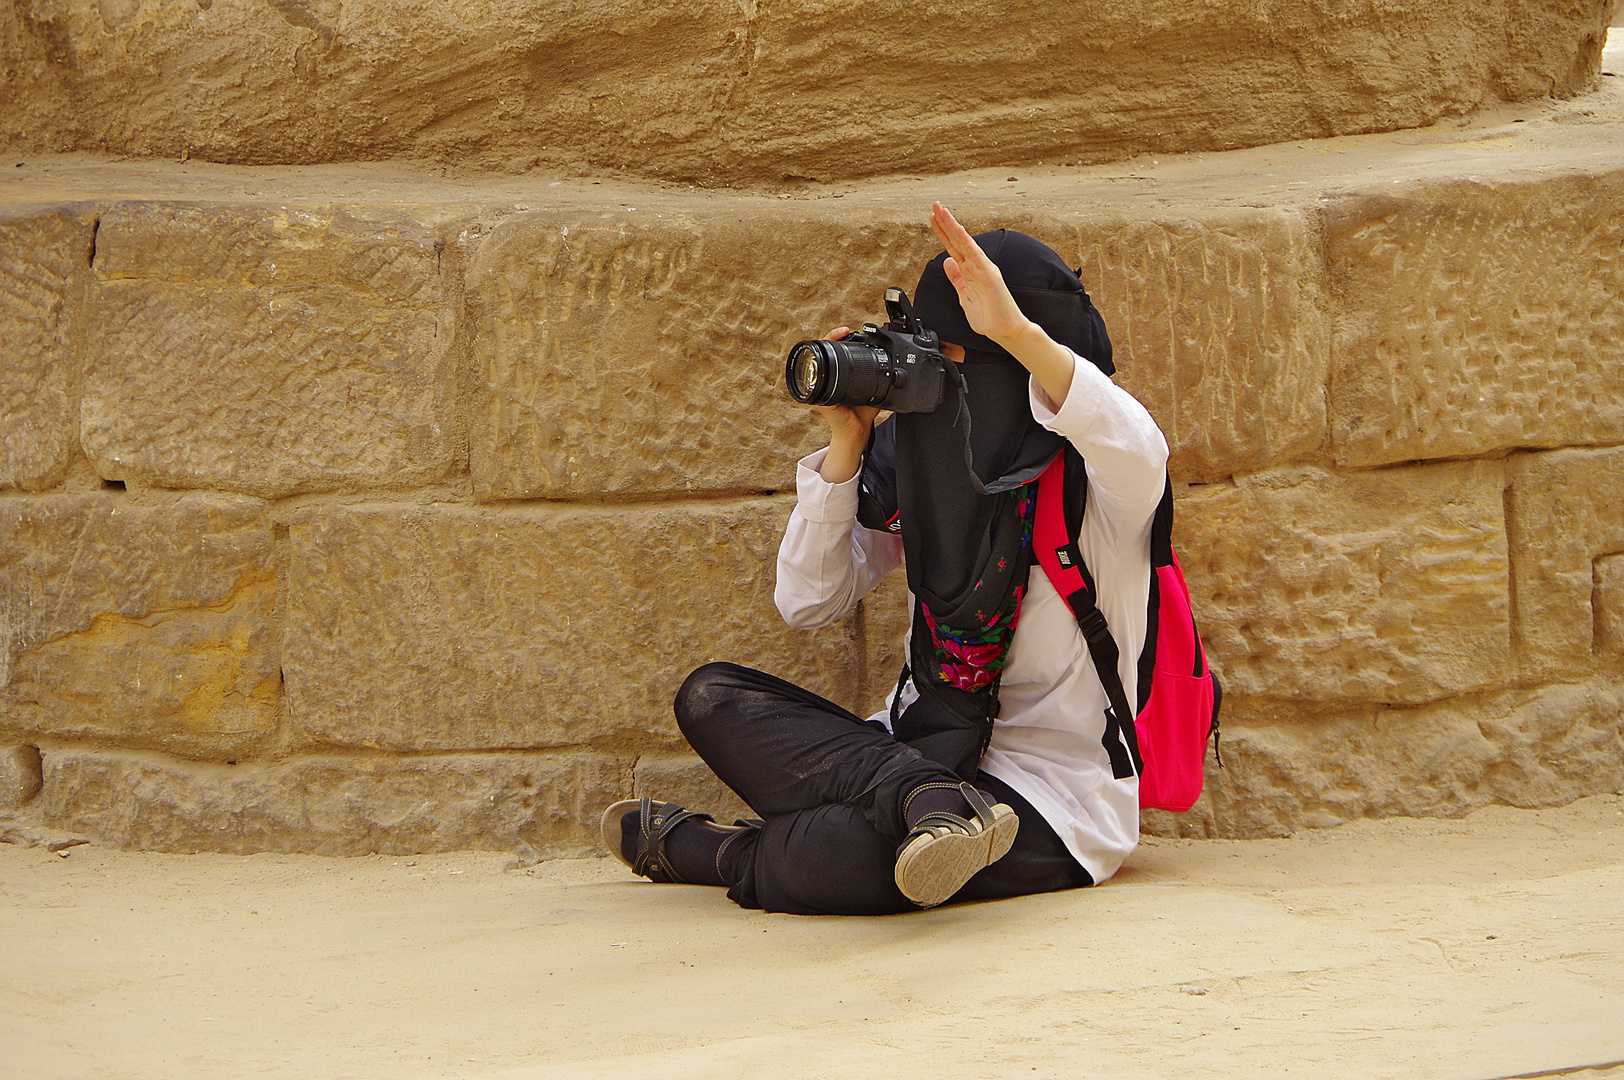 fotografiert im Karnak Tempel